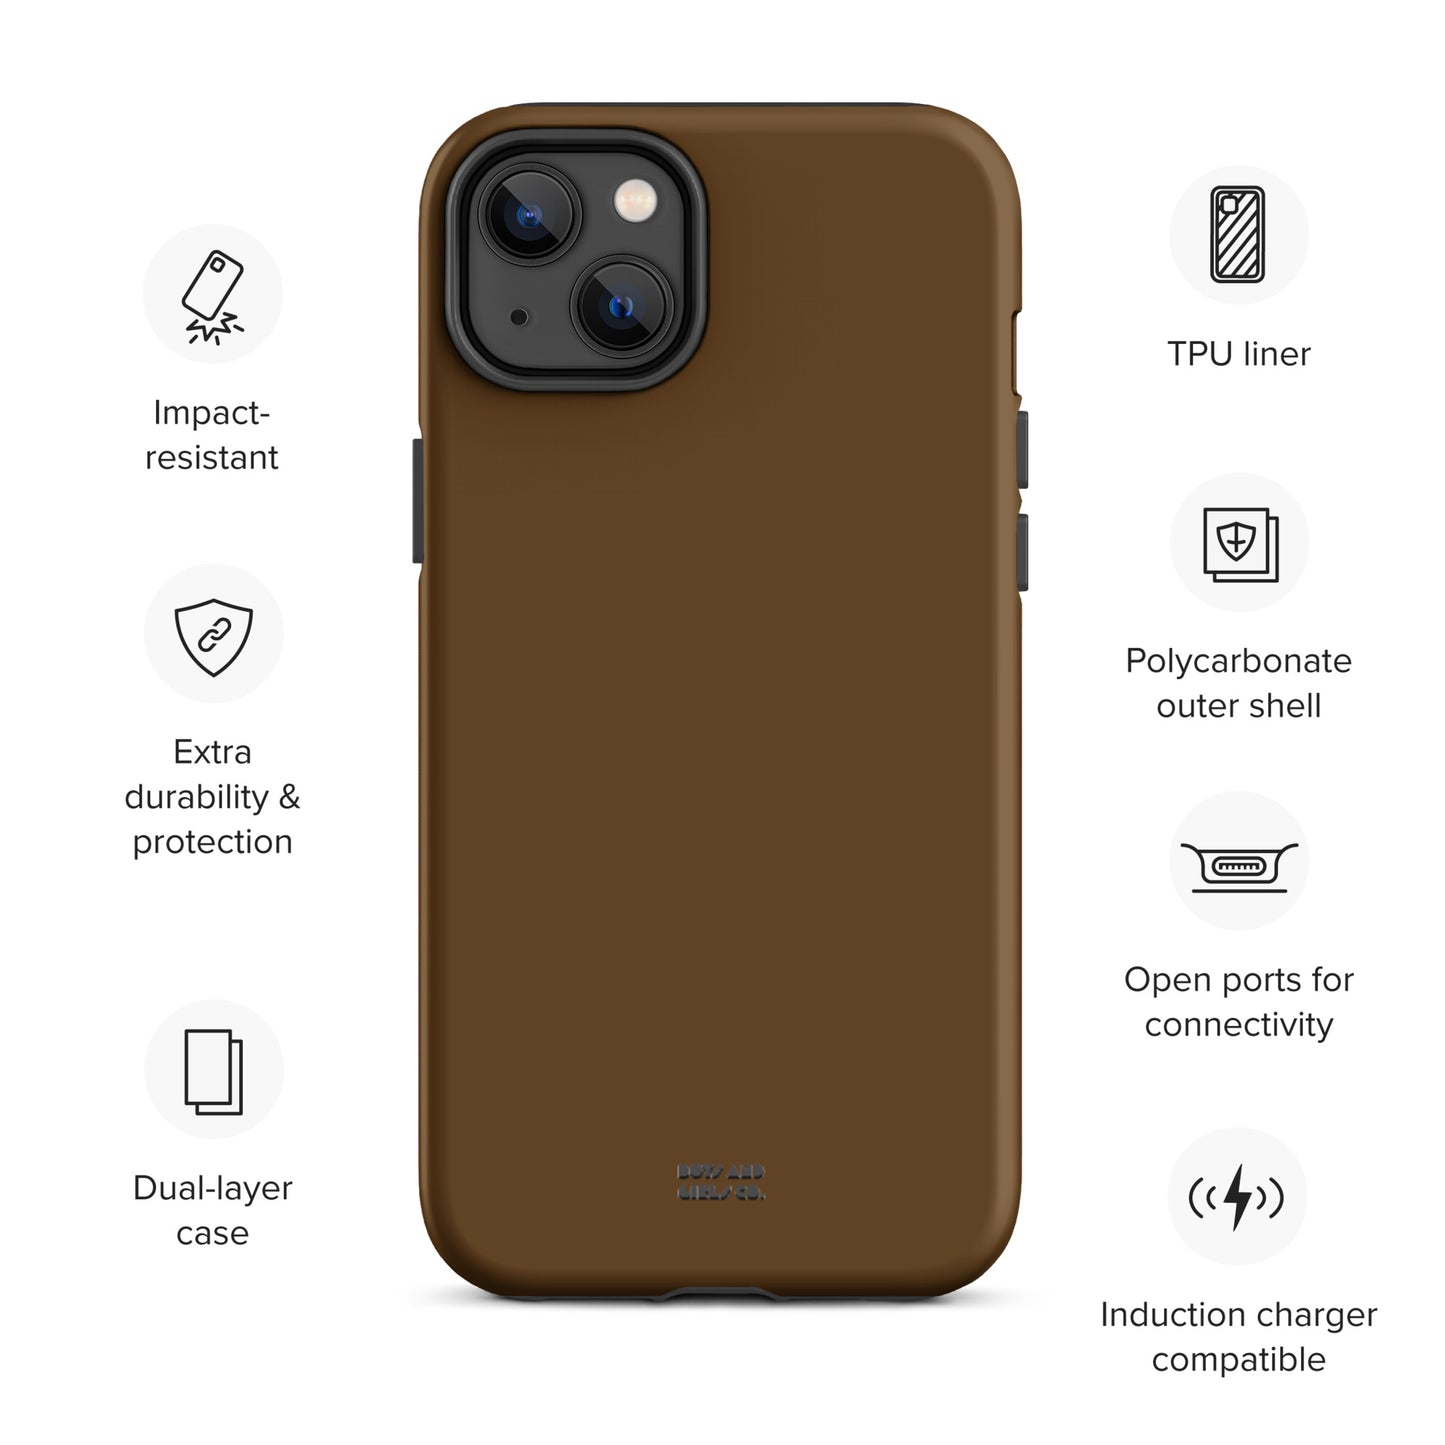 BROWN - Tough iPhone case